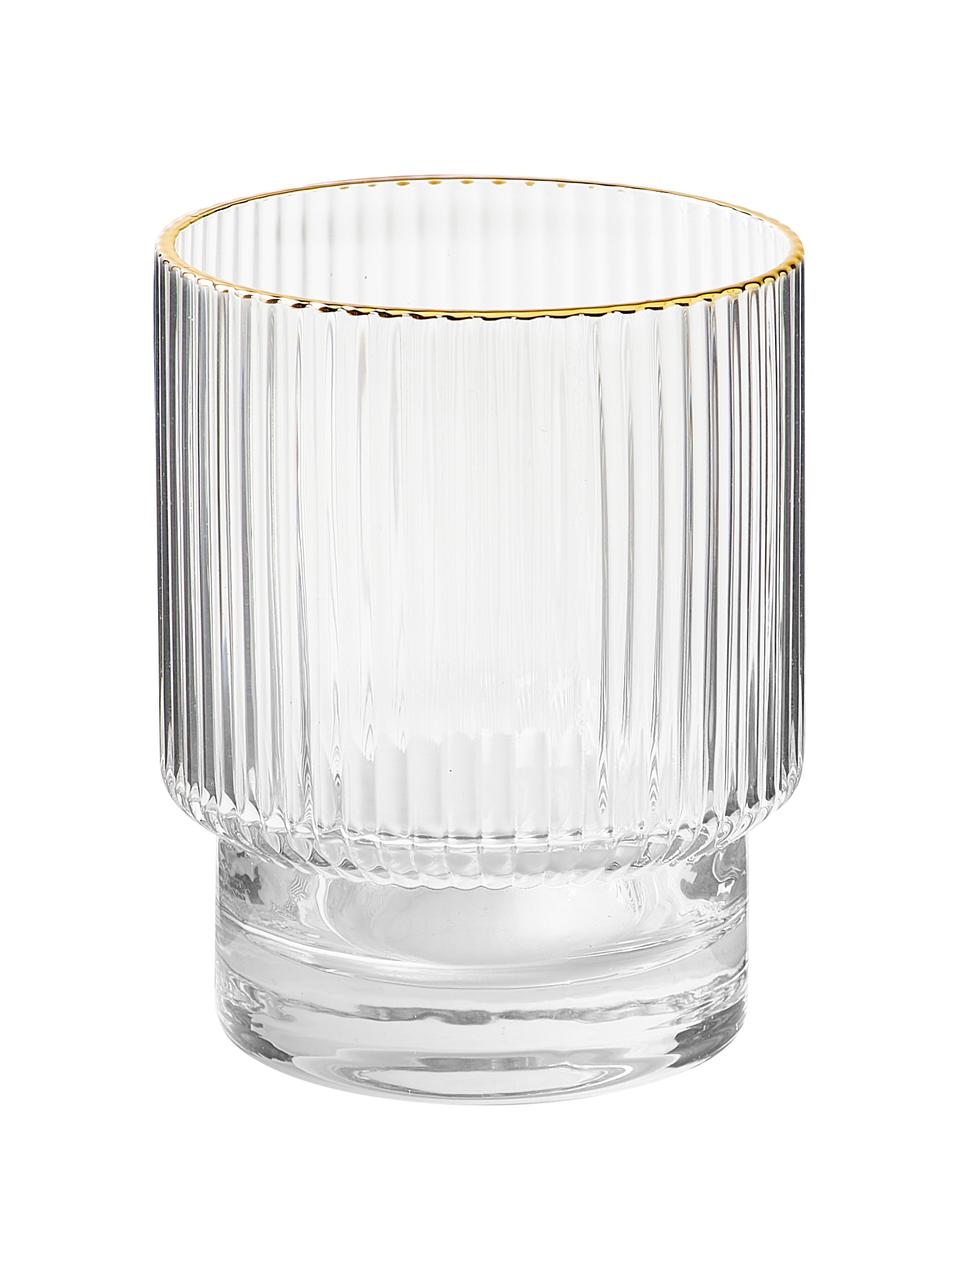 Handgemaakte drinkset Minna met gegroefd reliëf en gouden rand, 5 delig., Mondgeblazen glas, Transparant, goudkleurig, Ø 10 x H 25 cm